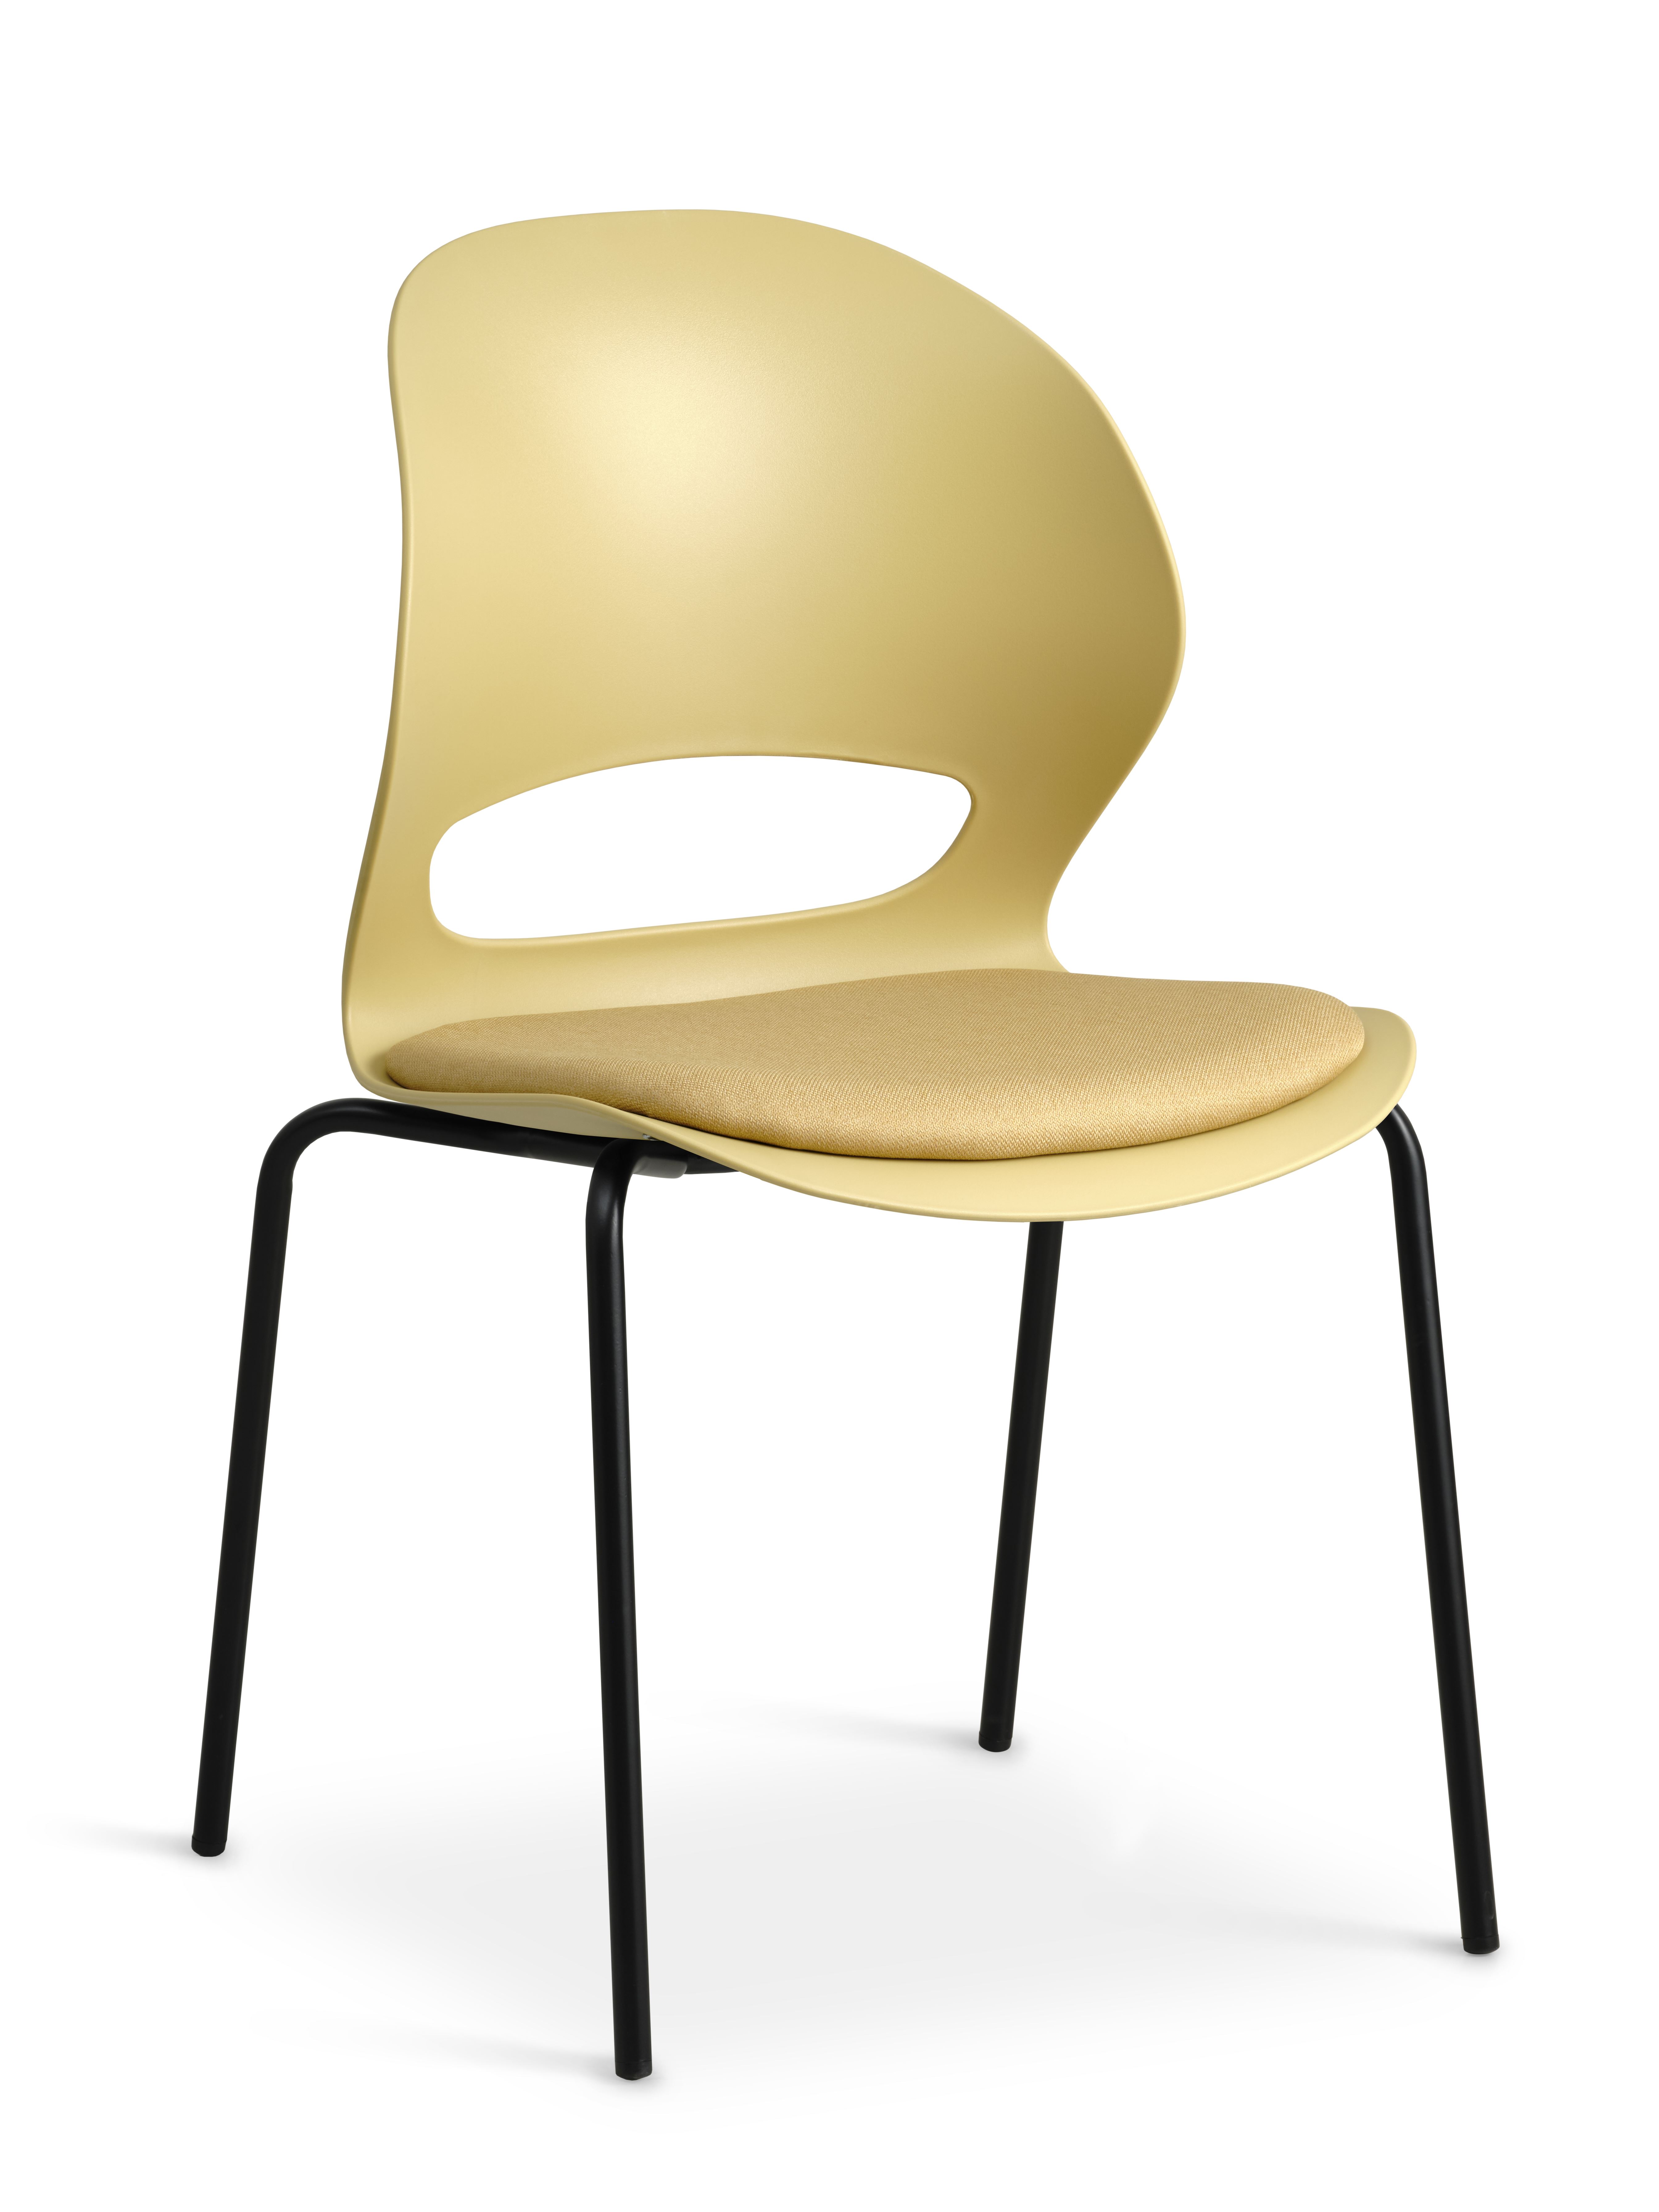 Linea spisebordsstol, m. sennepsgul stofhynde - sennepsgul PVC og sort metal